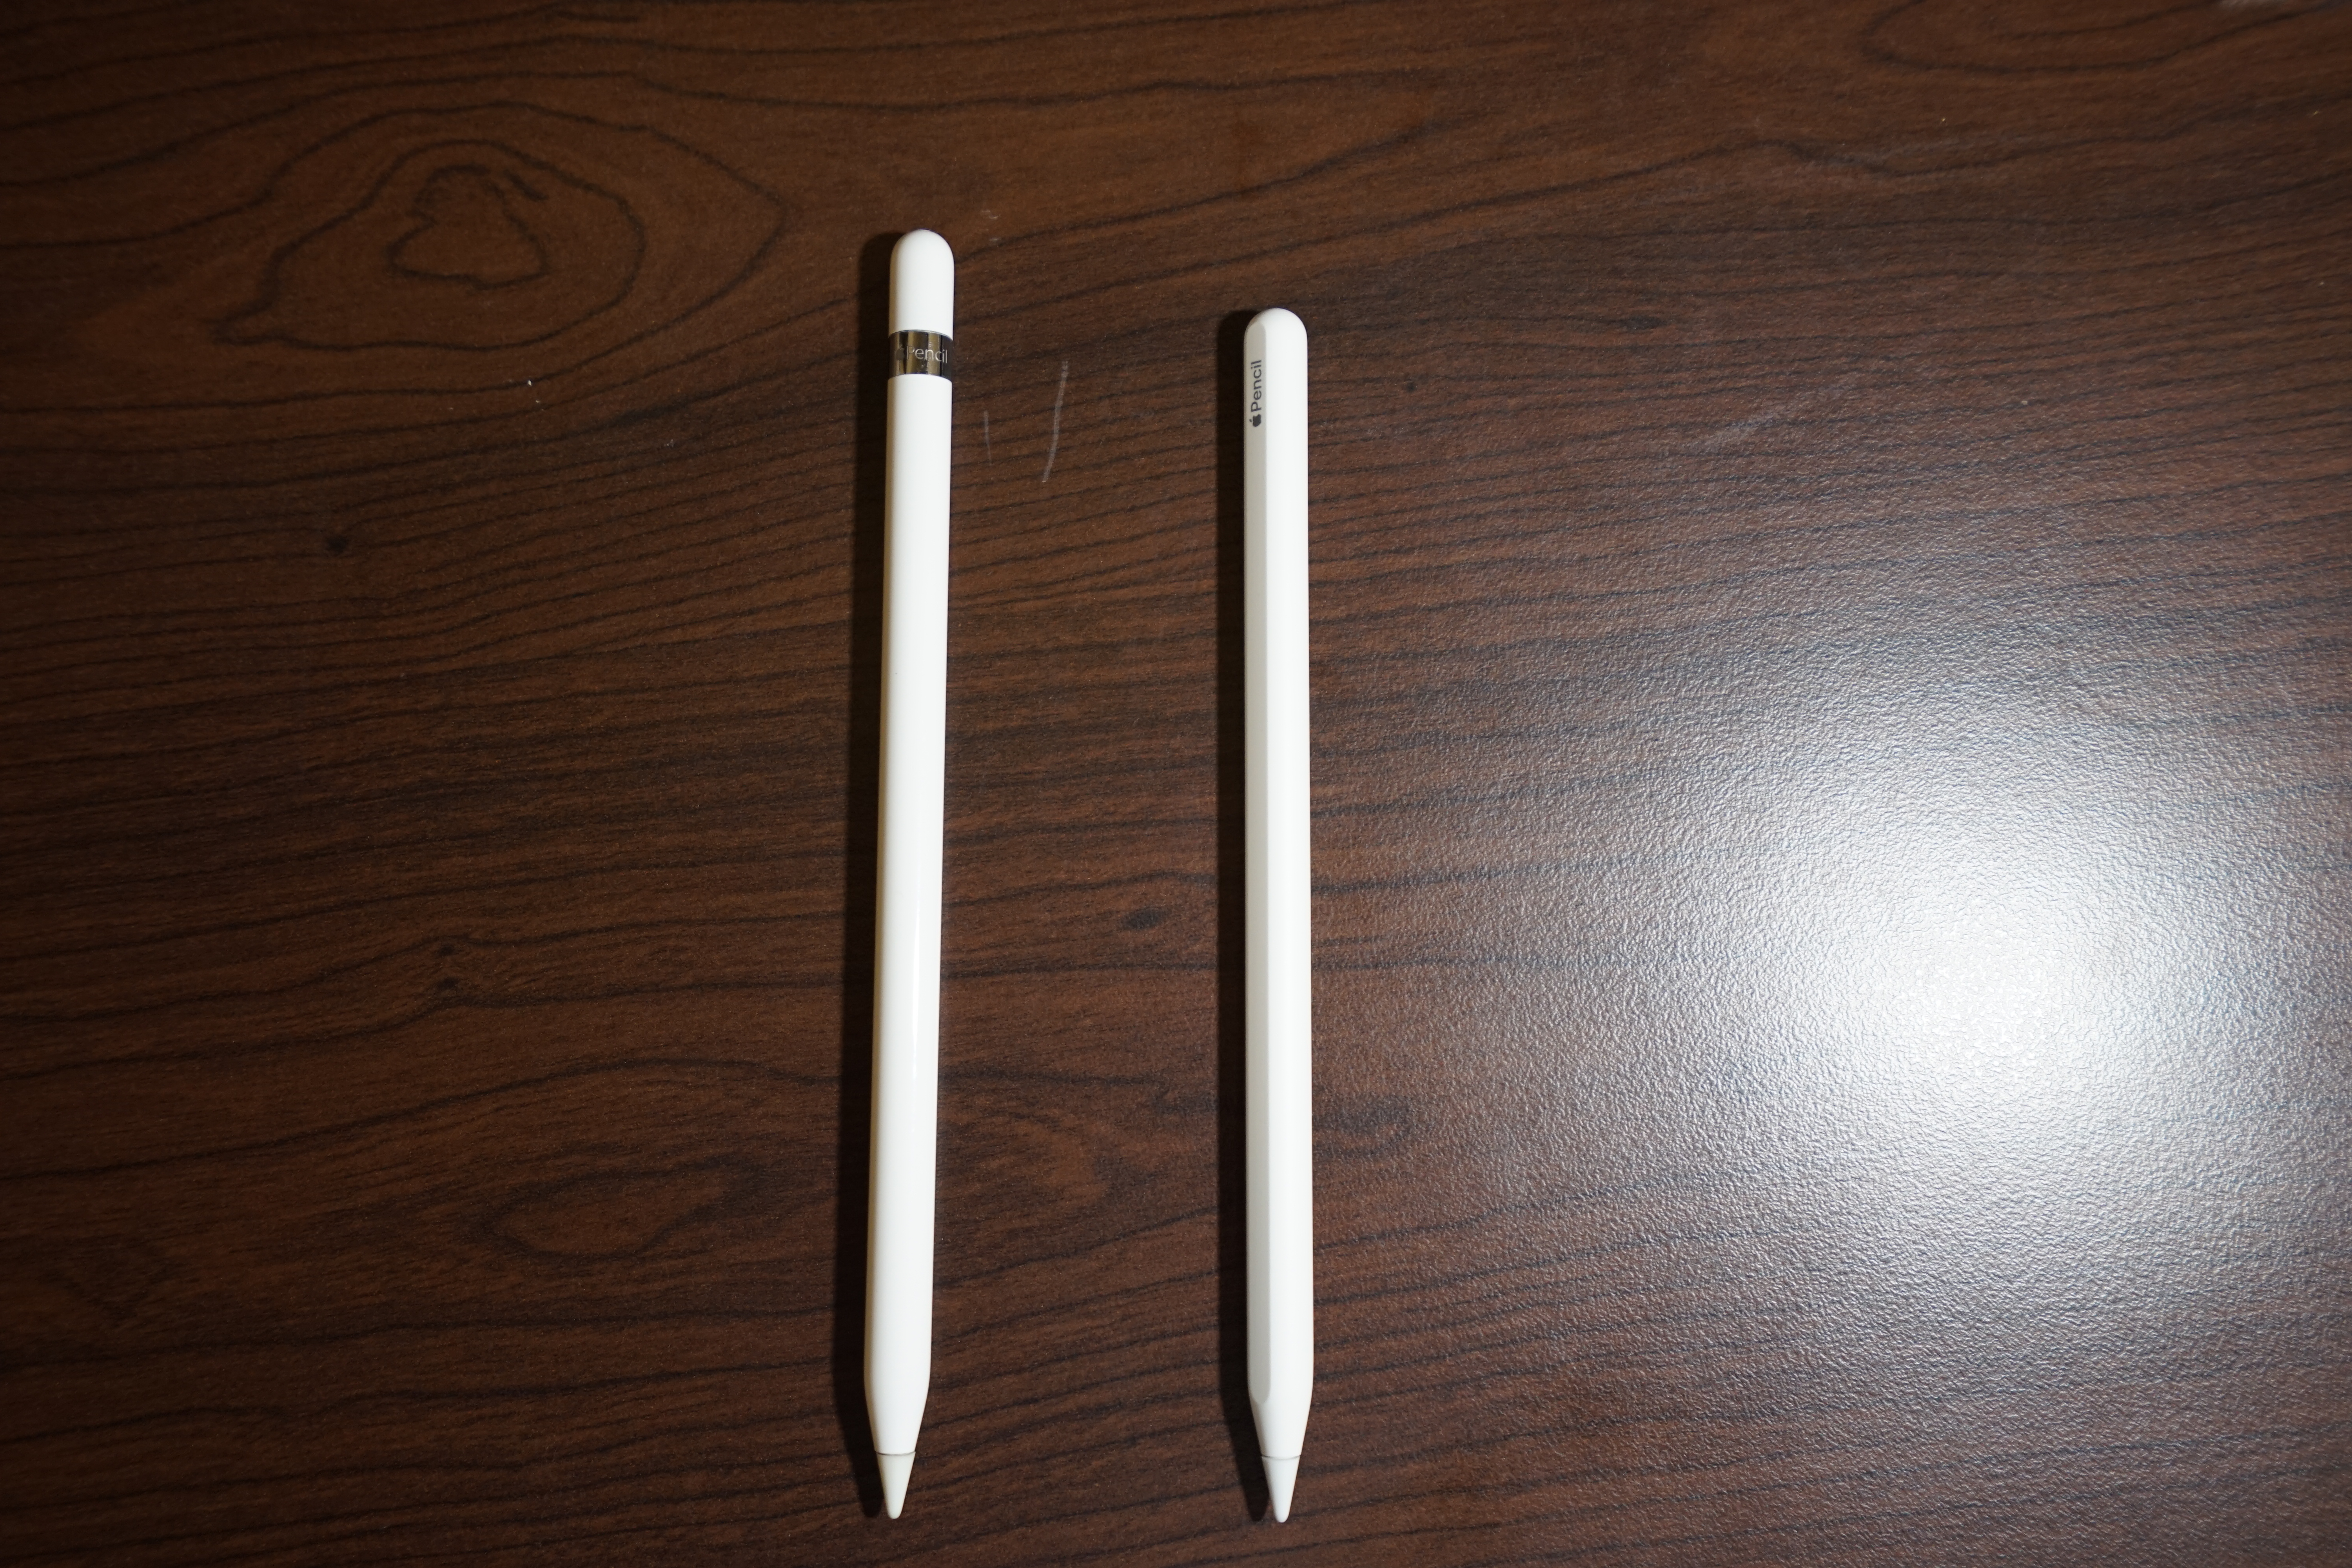 Apple Pencil 1 & 2 Compare